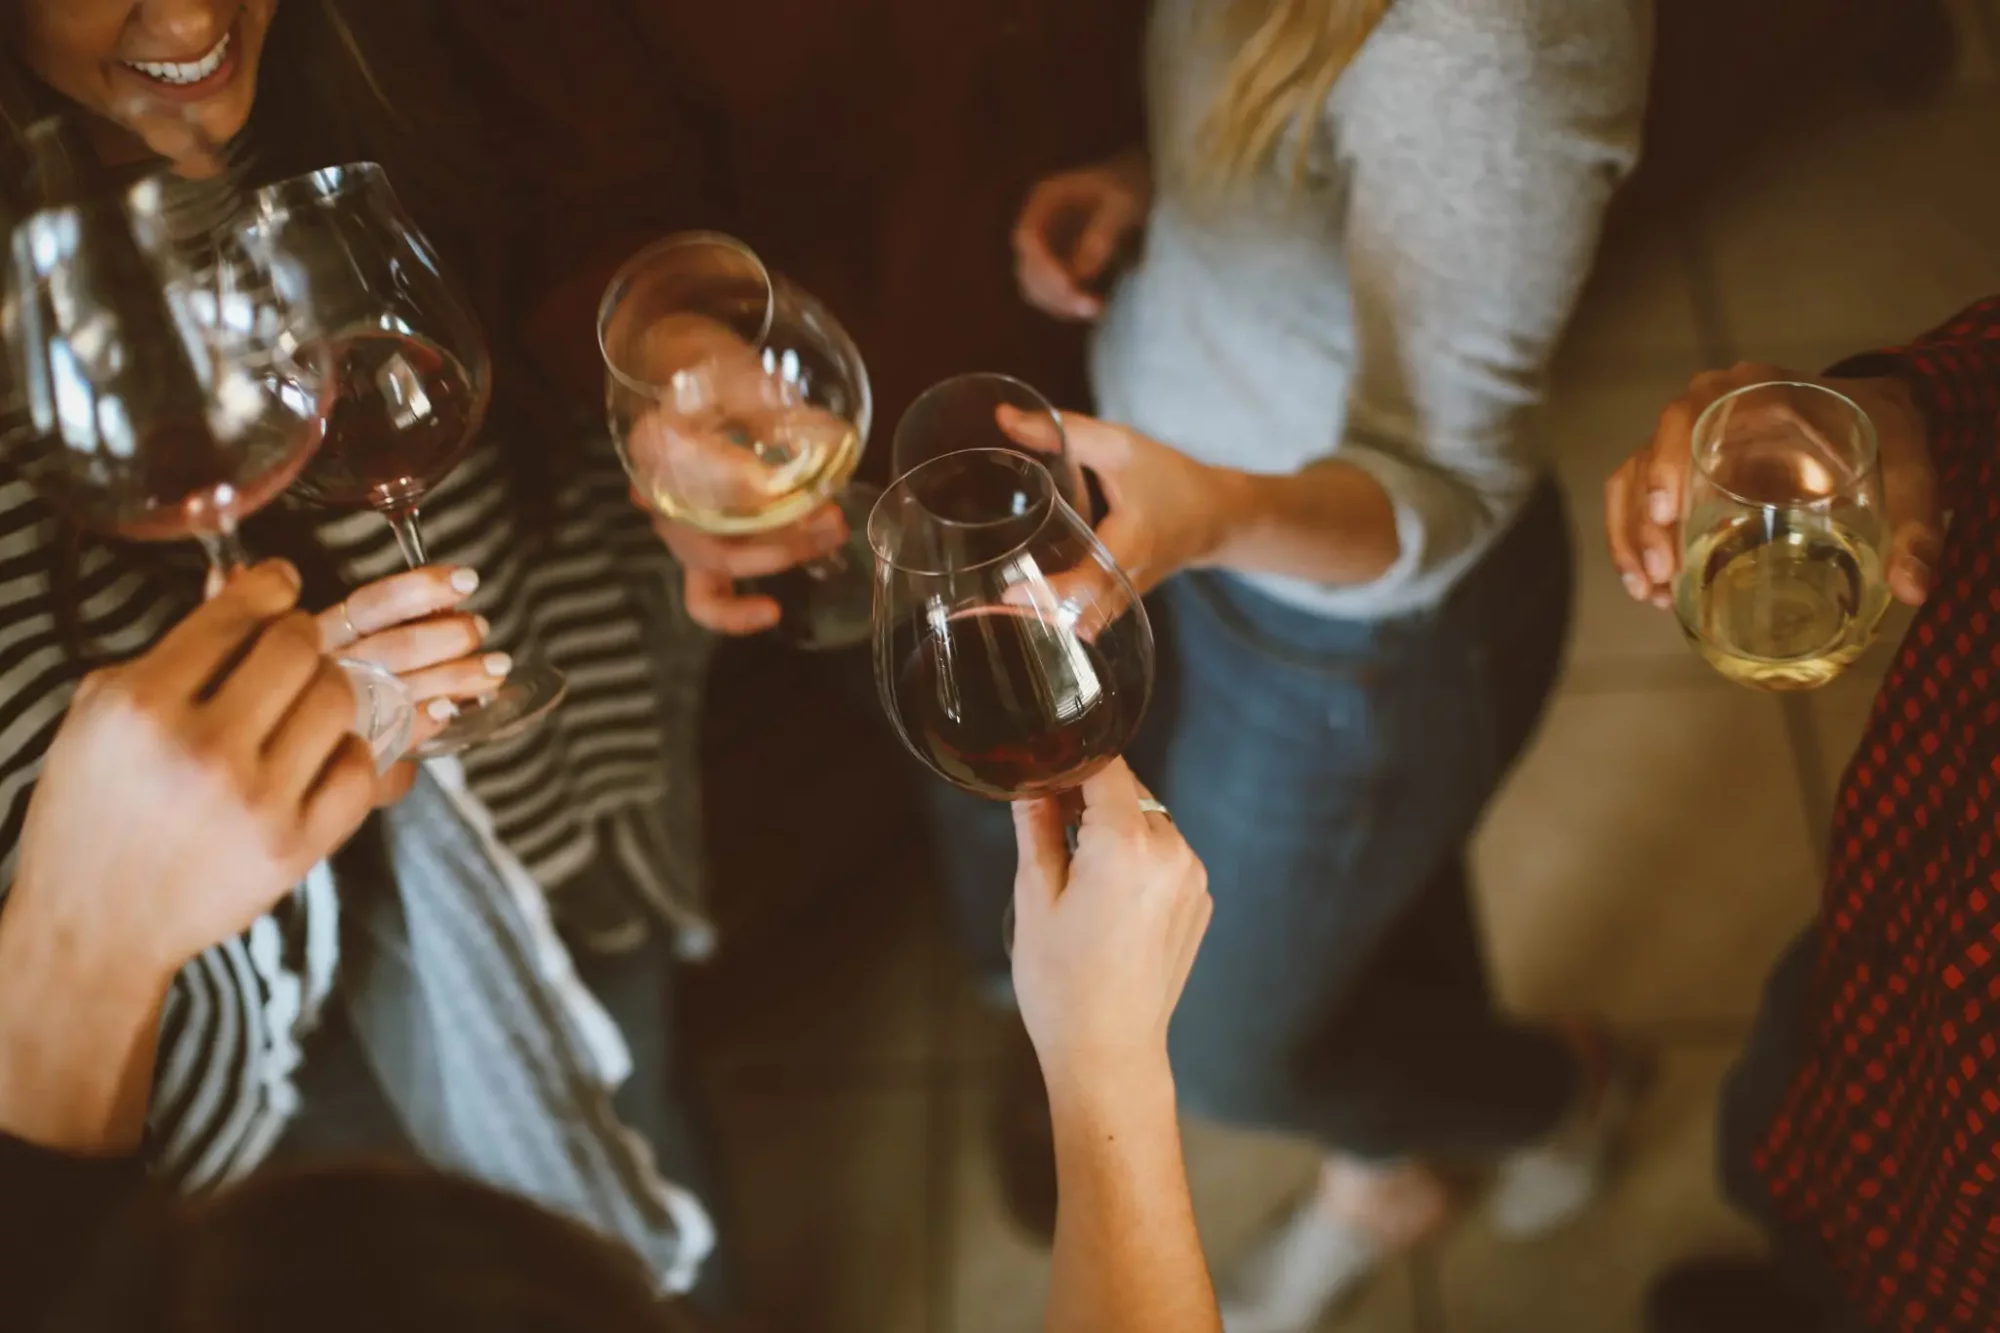 Wine brings people together